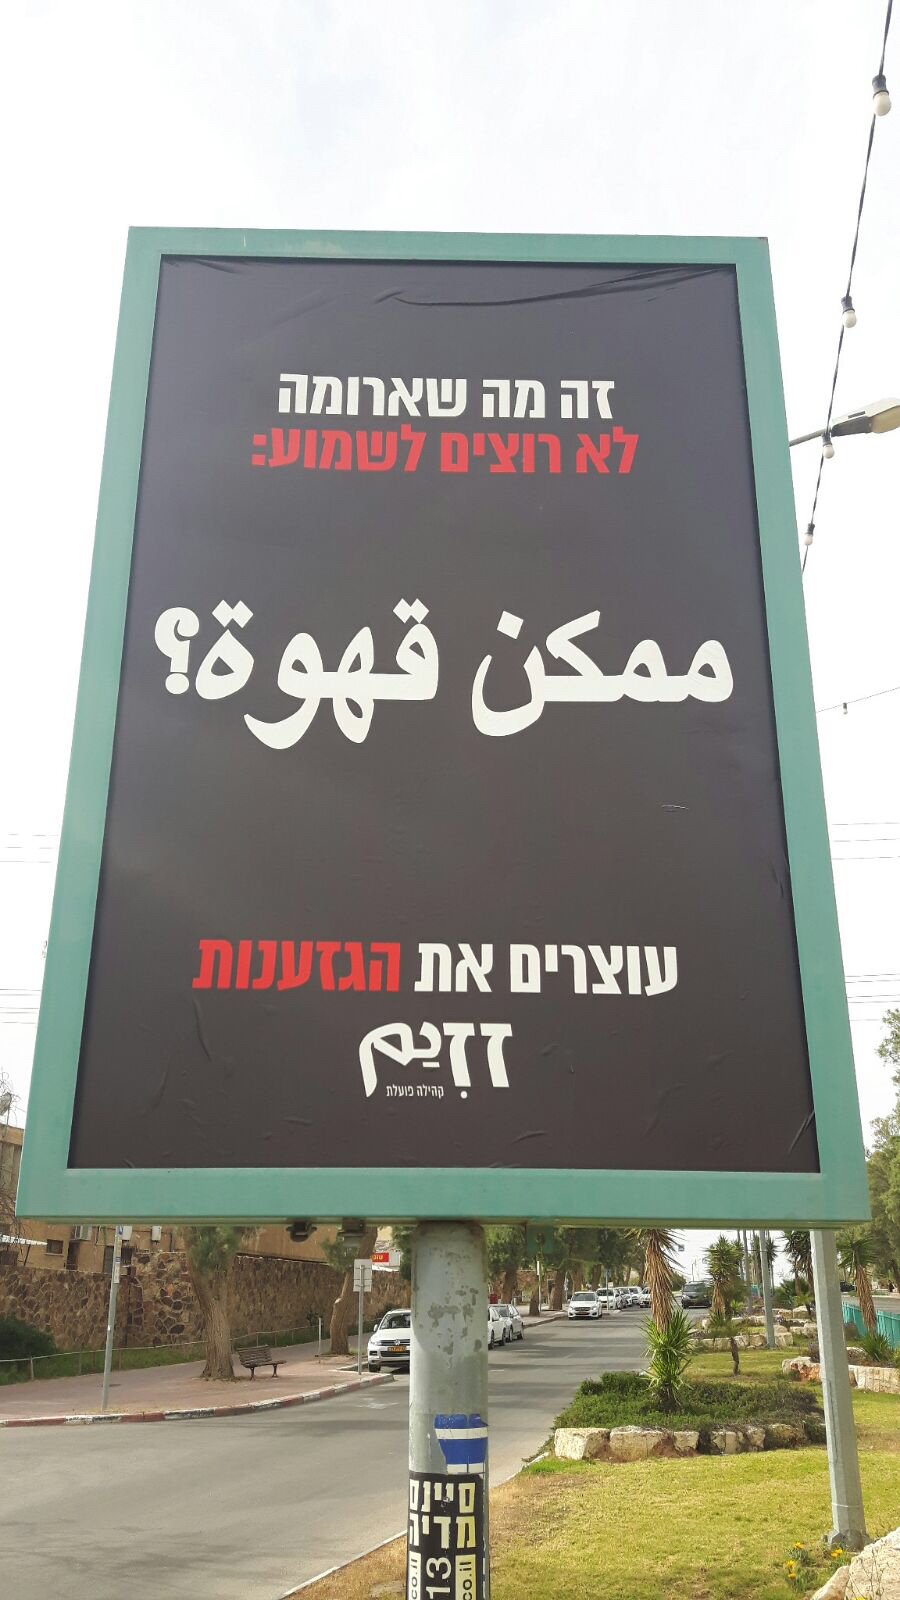 ״ممكن قهوة؟״: لافتات بالعربية علقت في مدينة عراد احتجاجًا على تعليمات شبكة "أروما"-1